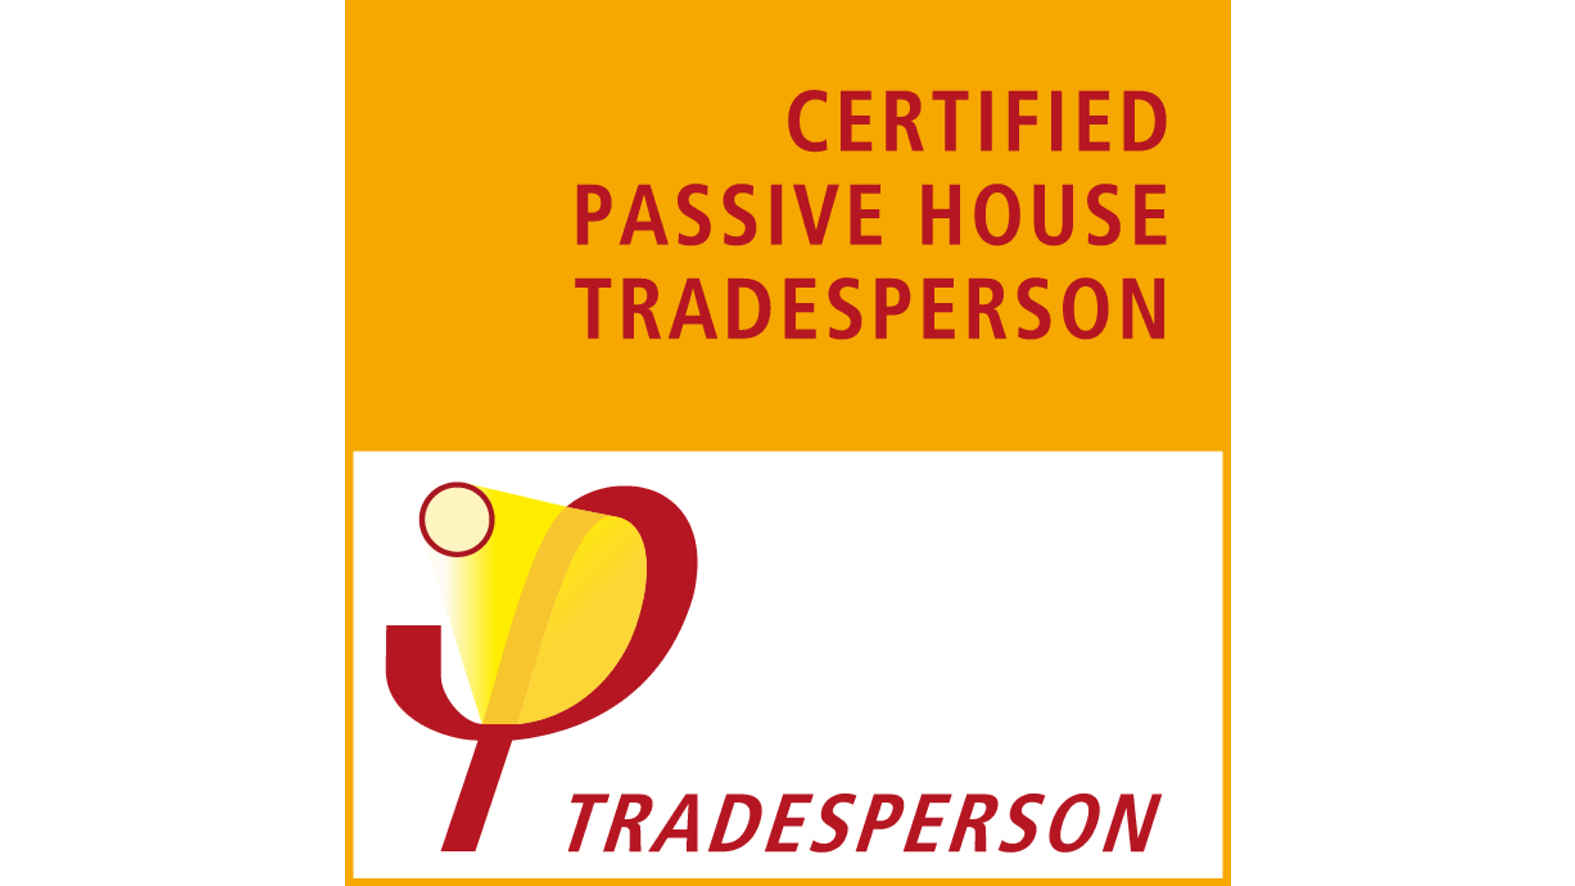 Certificied Passive House Tradesperson